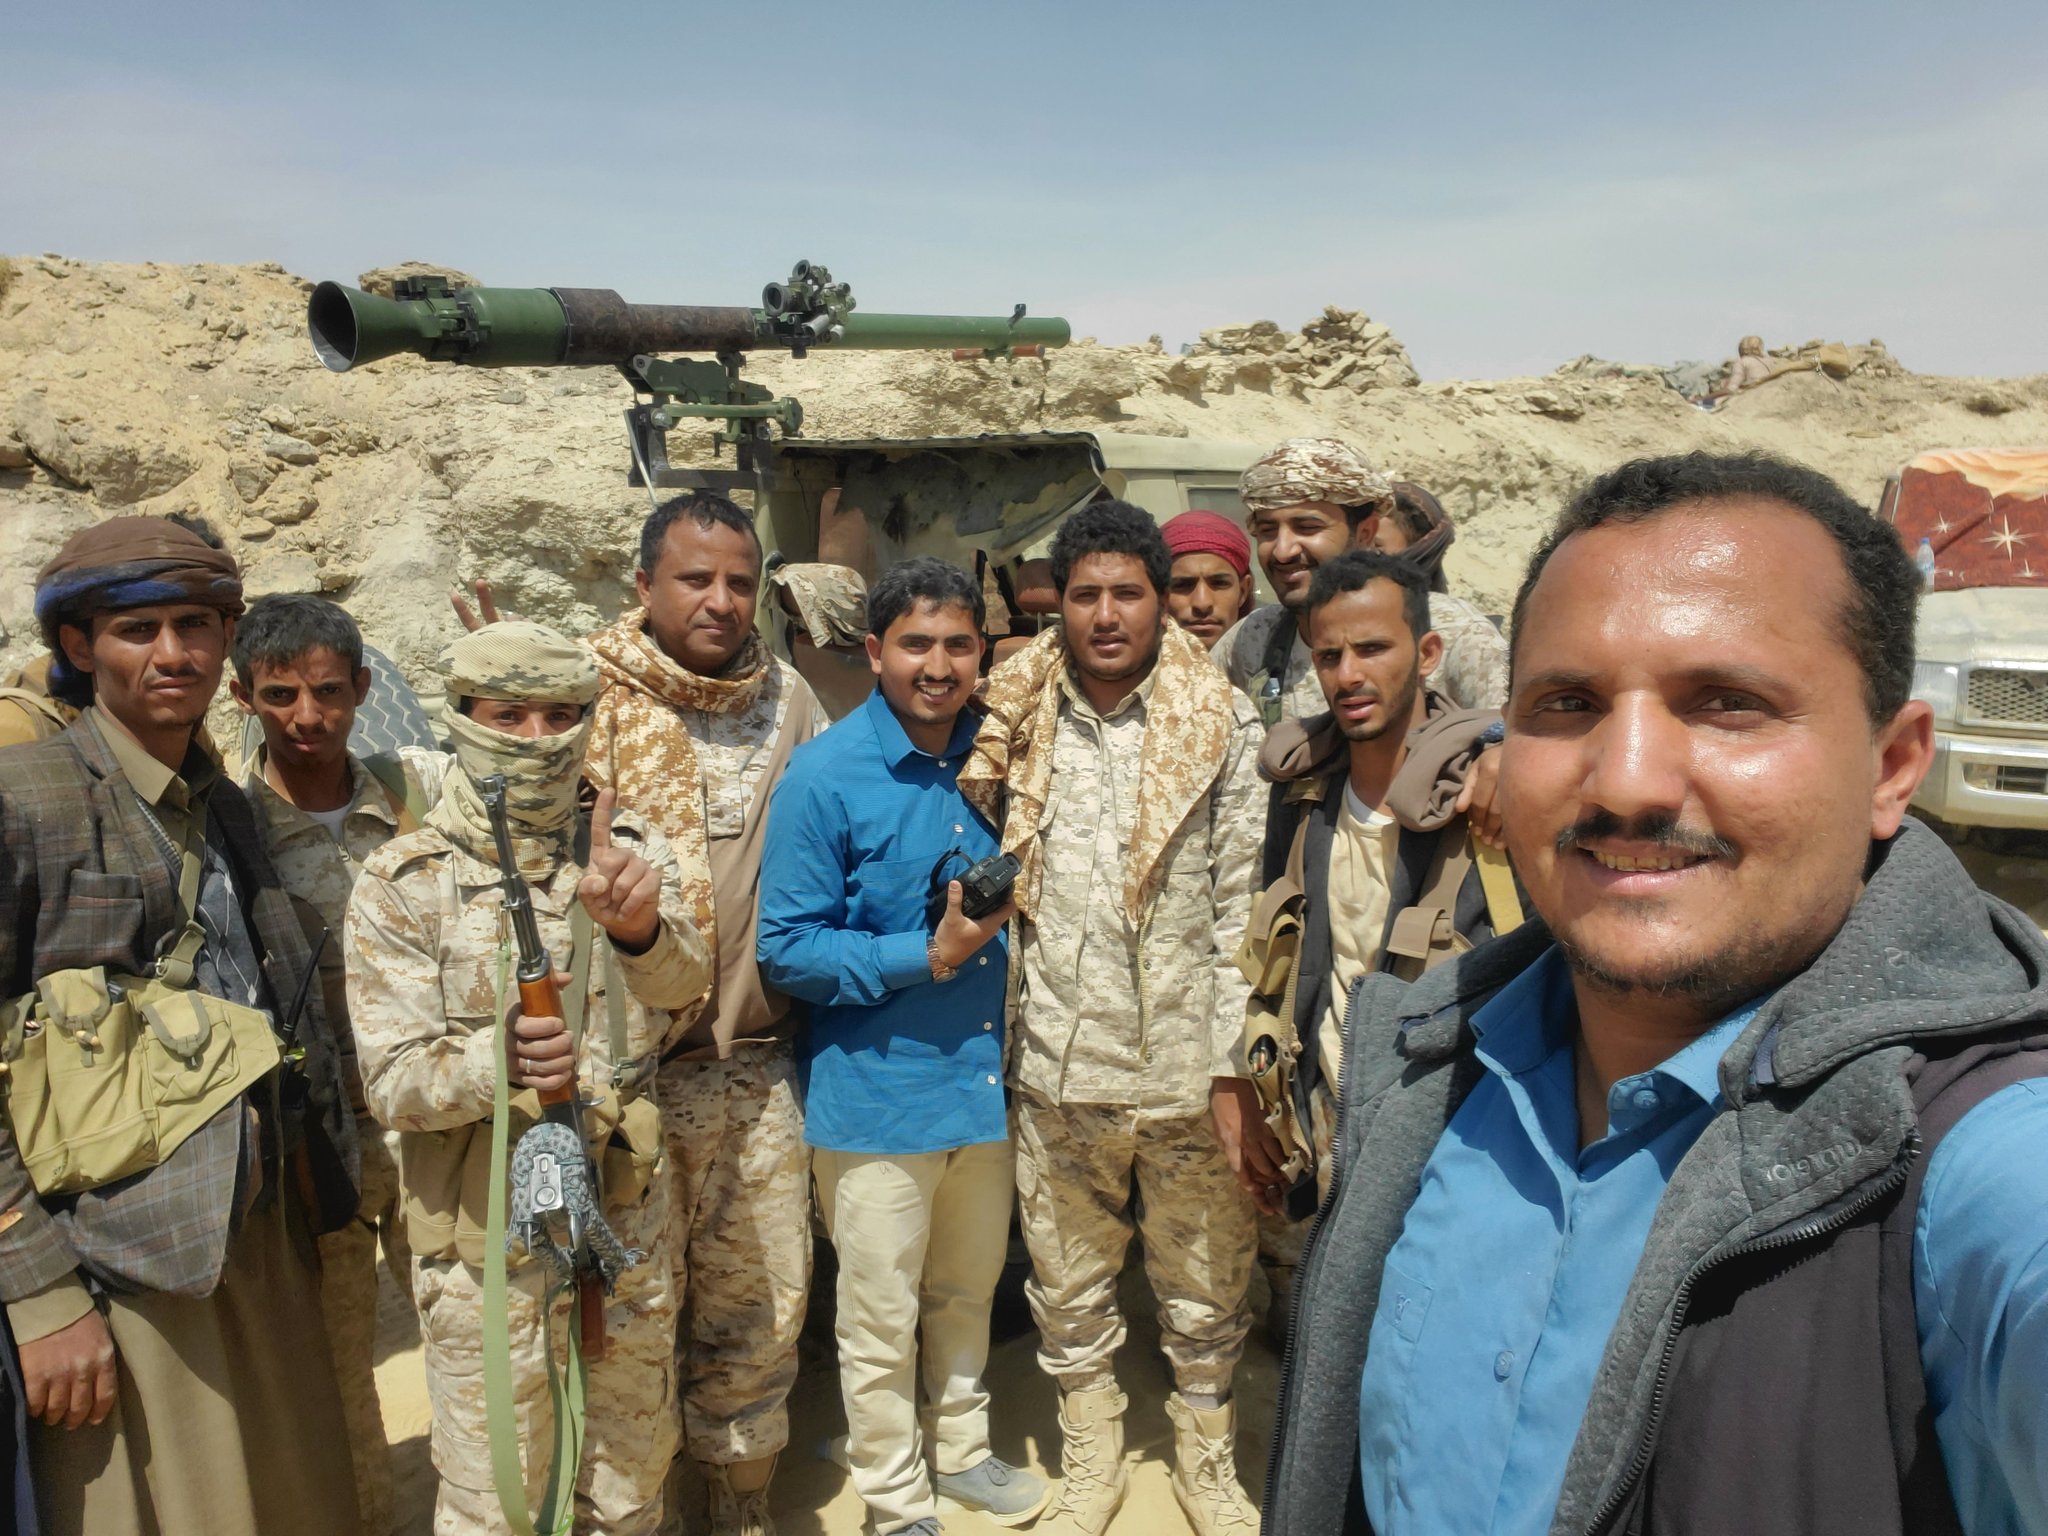 شاهد صورة أثارت غضب جماعة الحوثي للجيش الوطني بعد سيطرته على منطقة في محافظة الجوف 